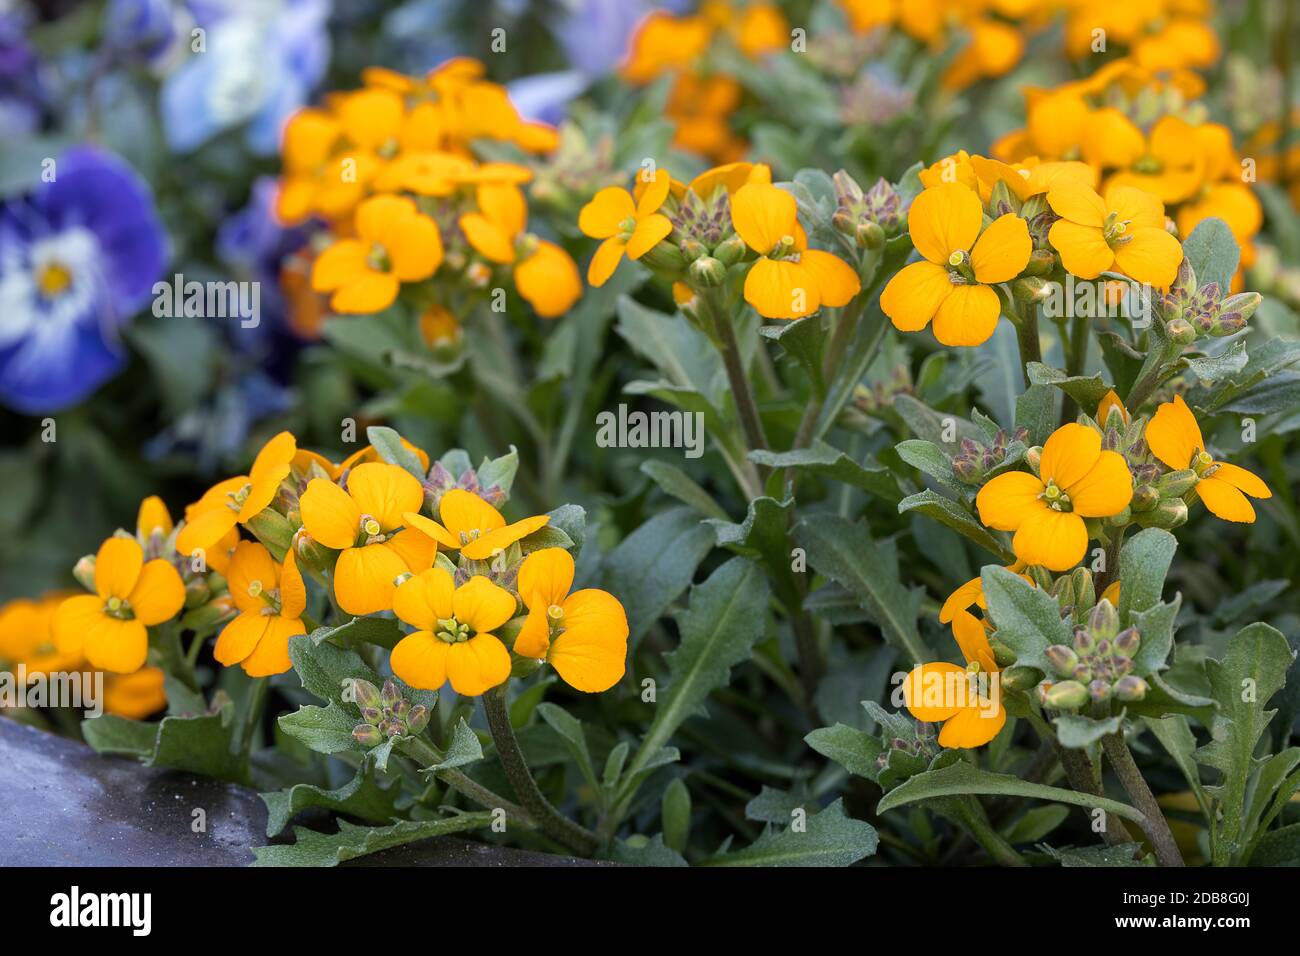 Erysimum cheiri or wallflowers in the garden Stock Photo